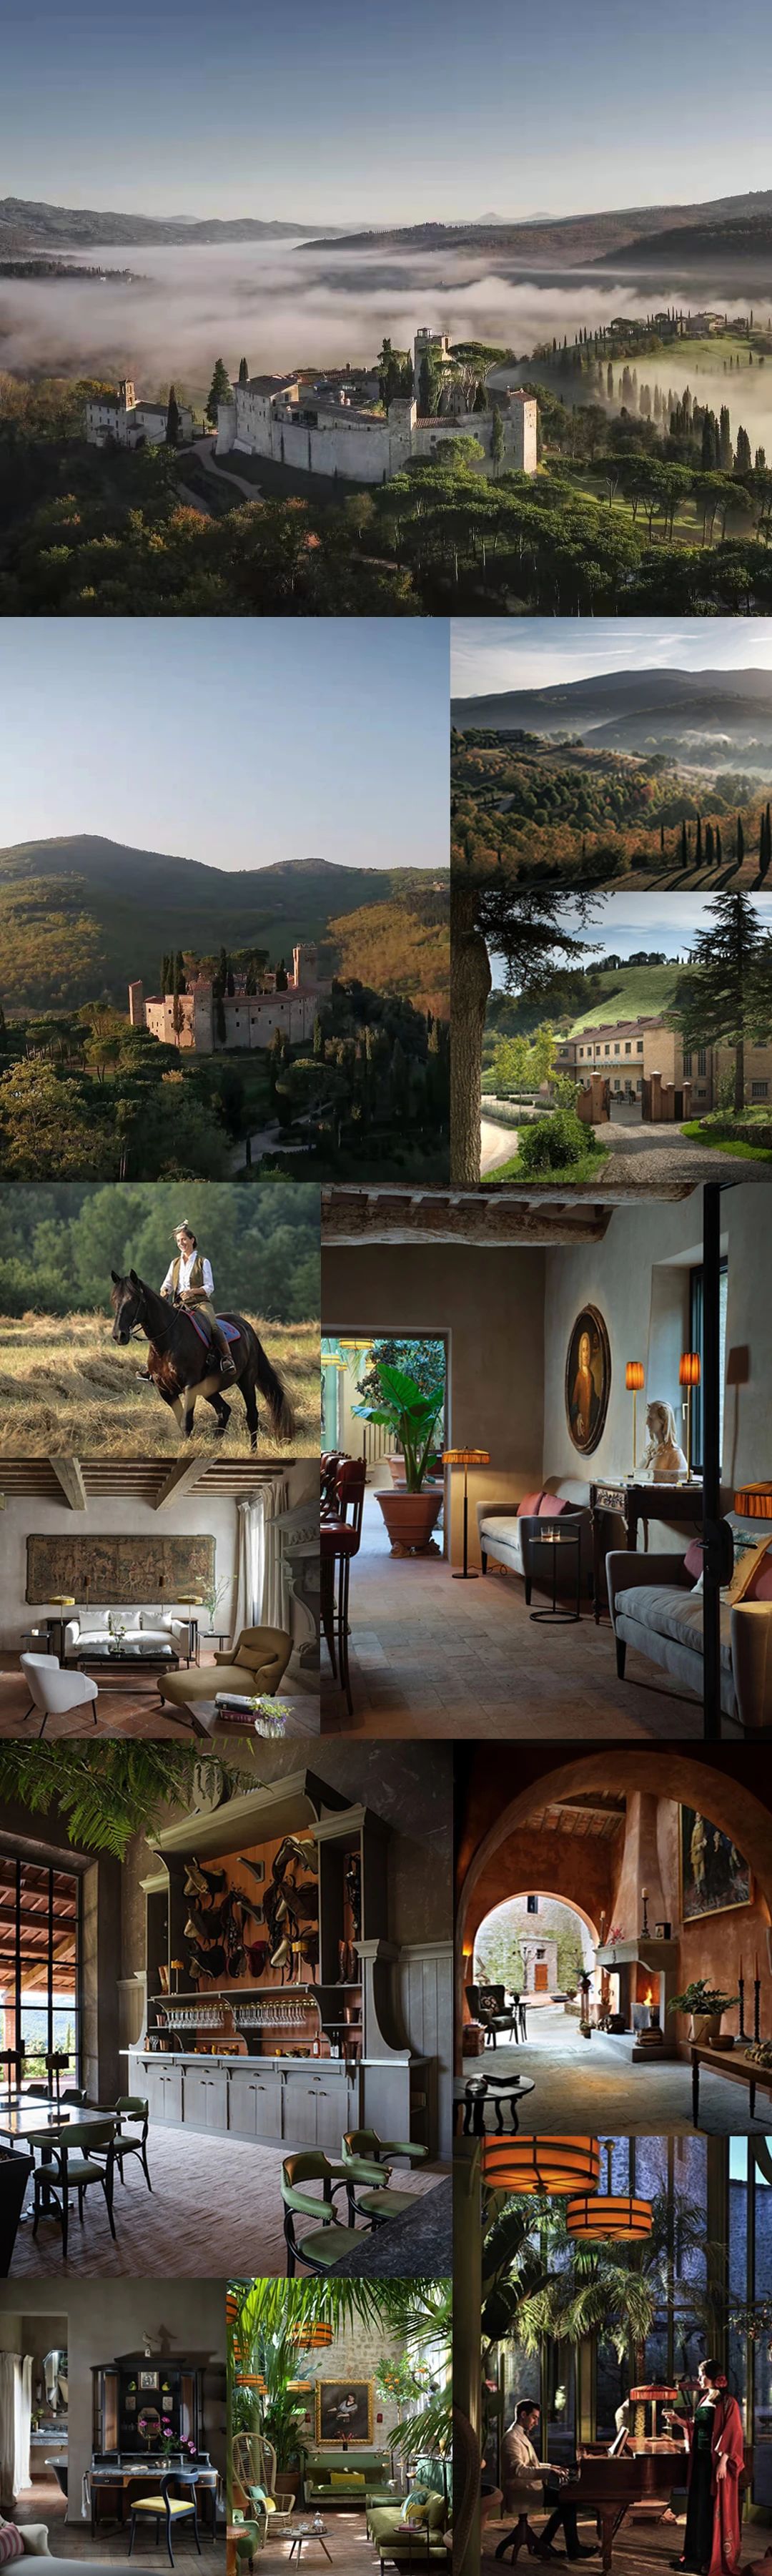 永恒的静修 一千多年历史的意大利城堡庄园酒店揭幕!